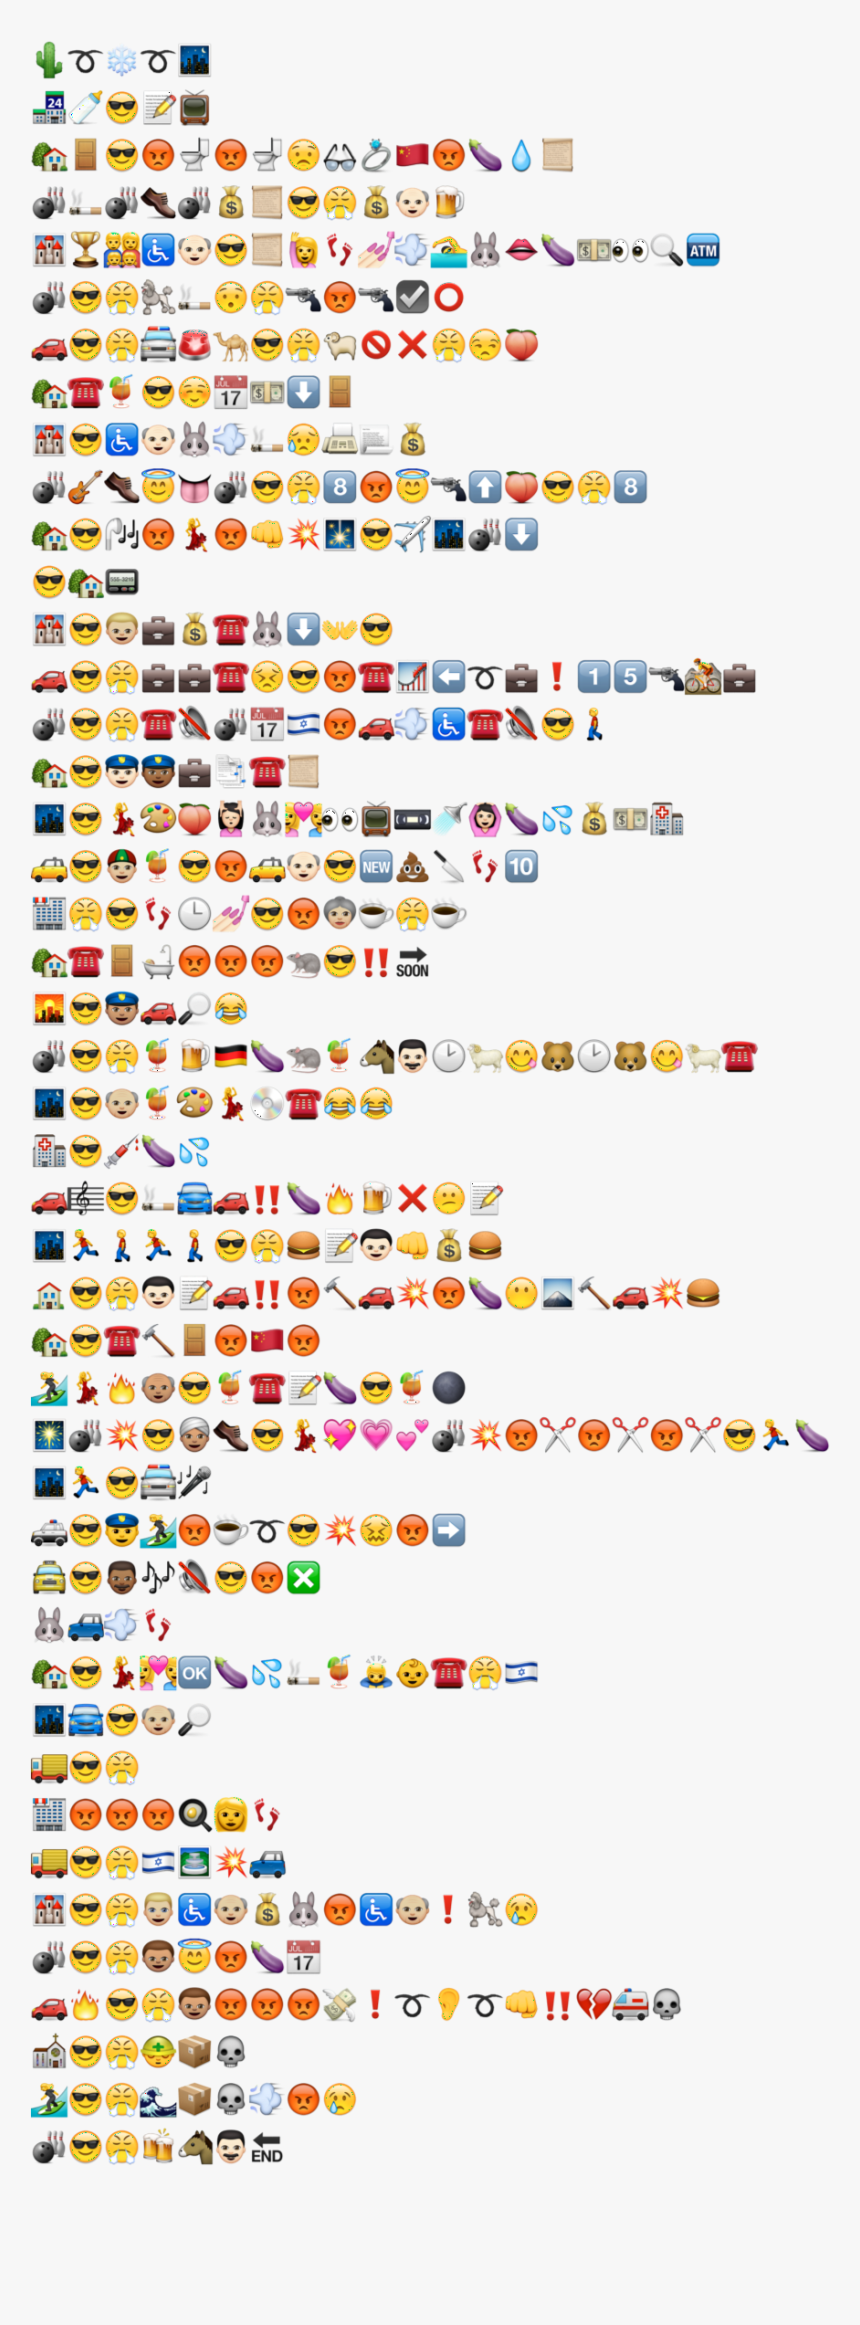 Image - Big Lebowski In Emojis, HD Png Download, Free Download